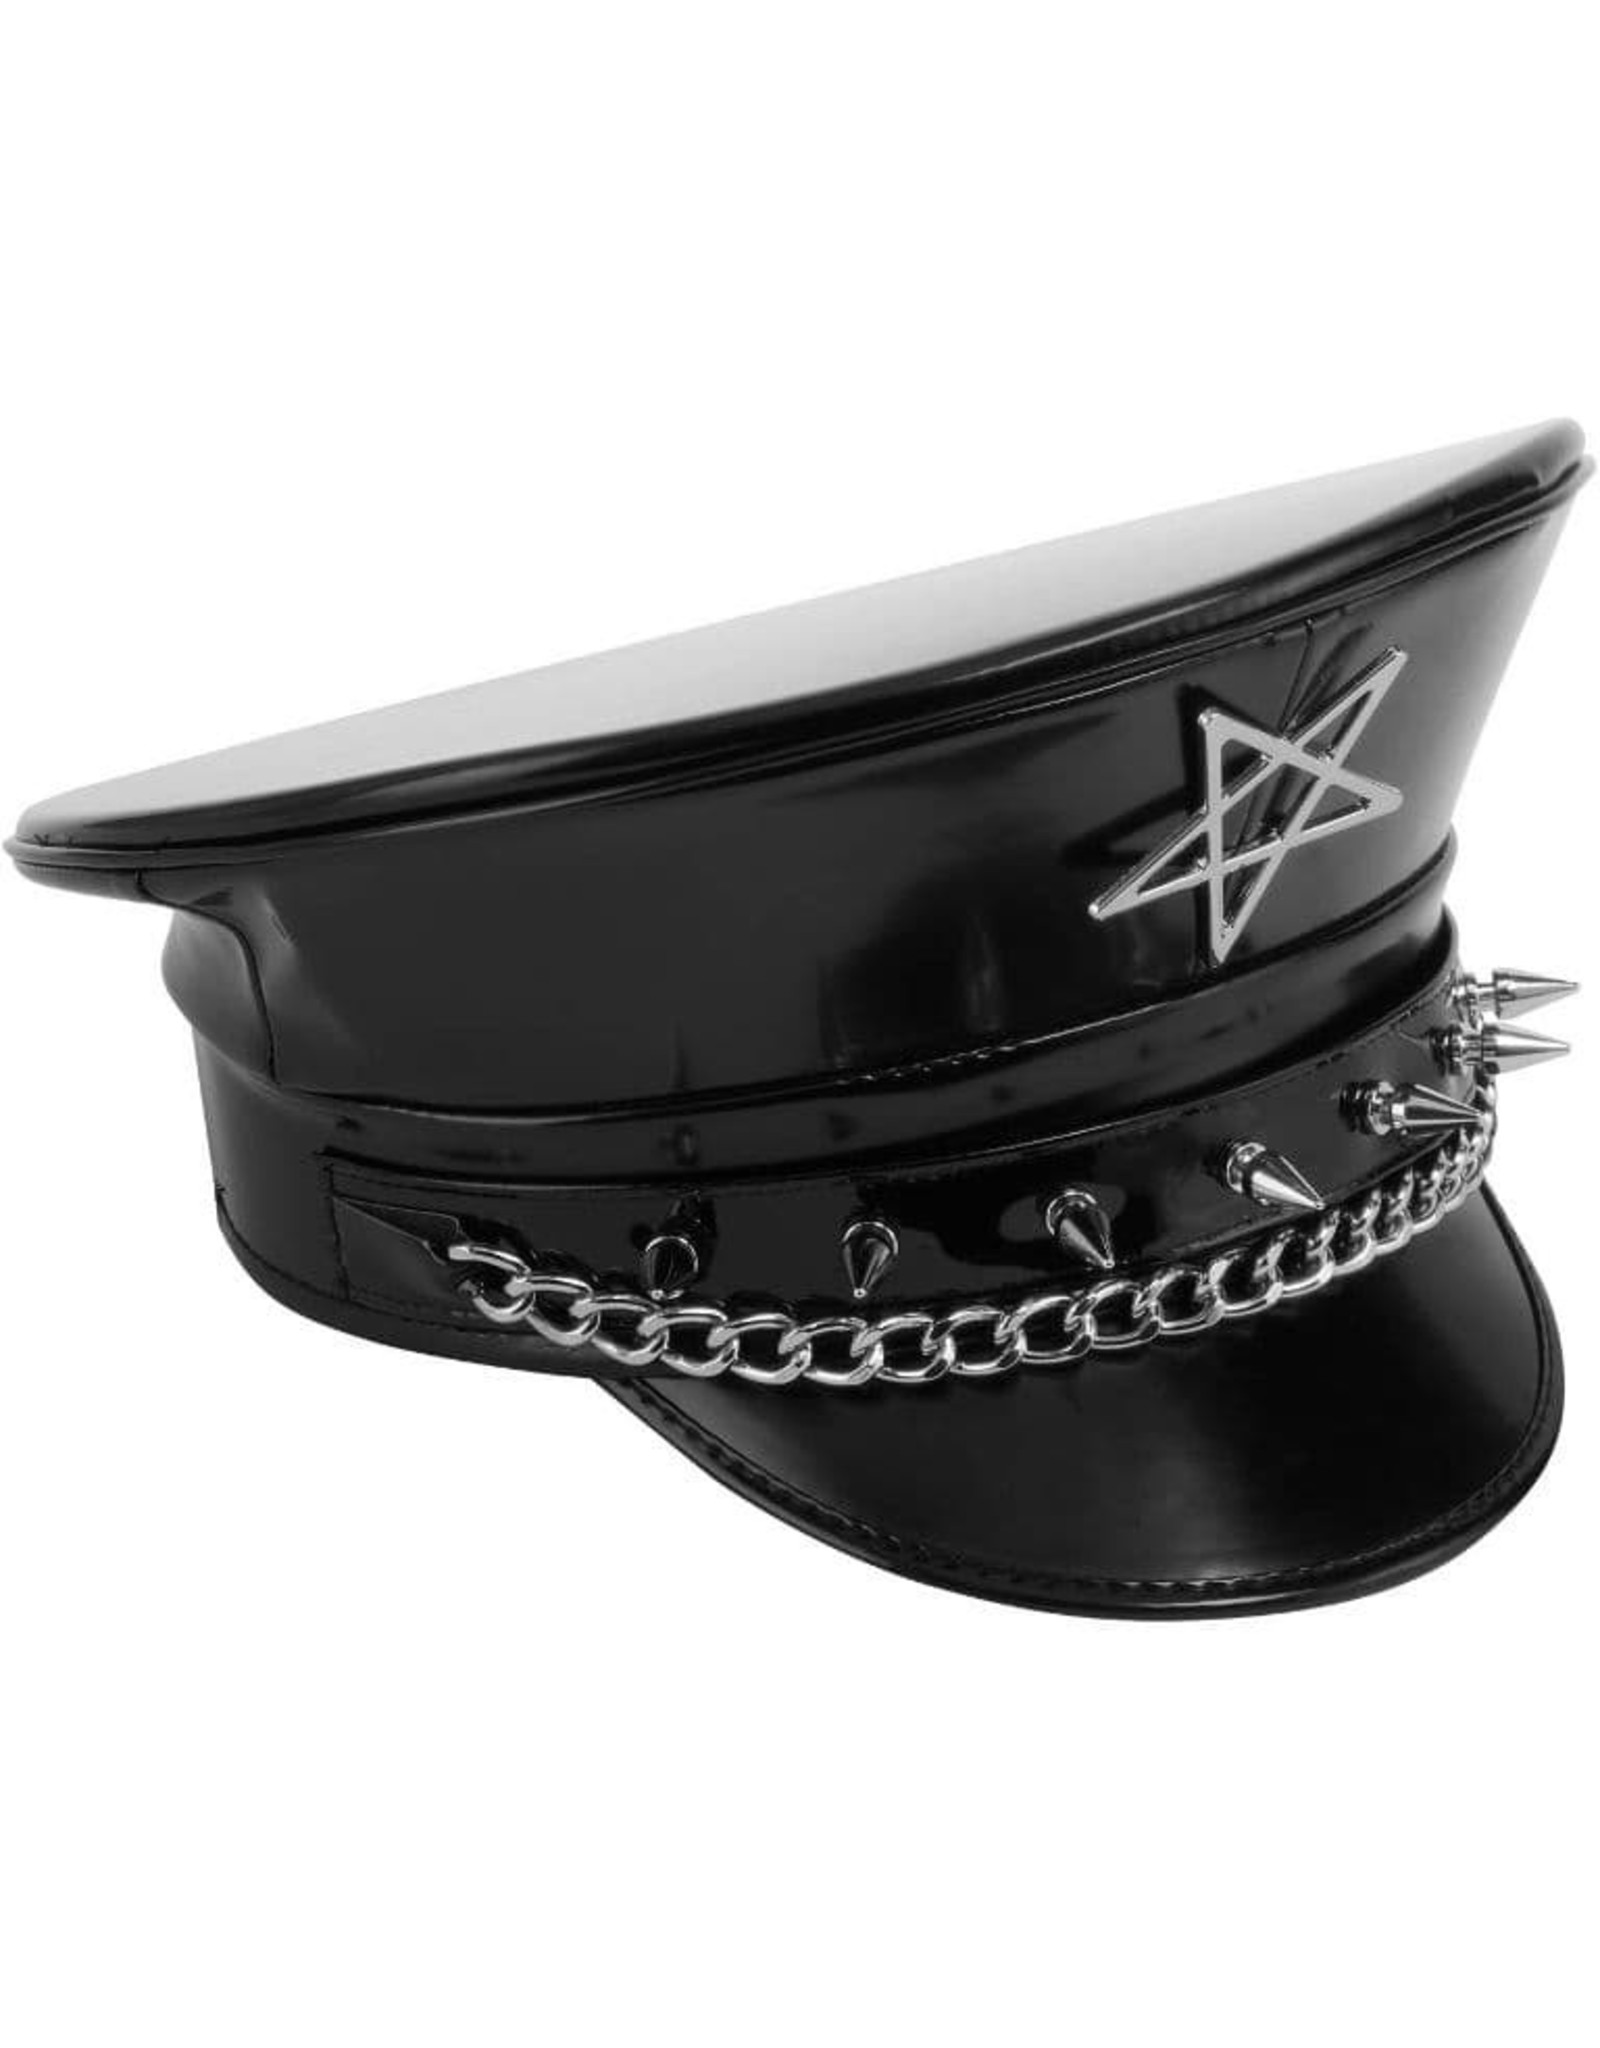 Killstar Gothic and Steampunk accessories -  Division SIXX Cap - KillStar